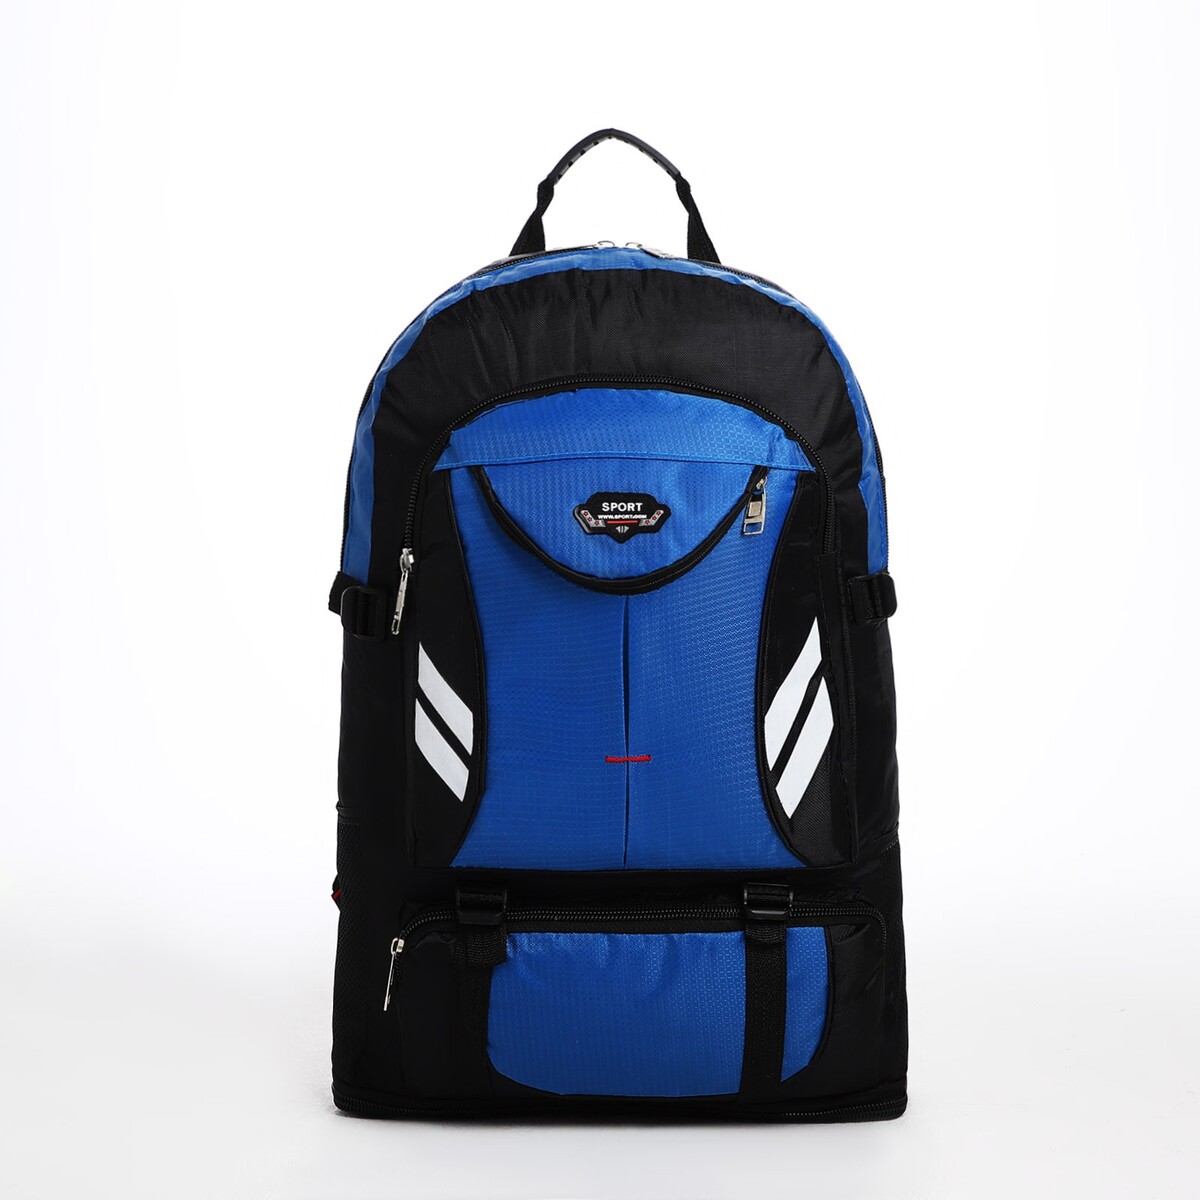 Рюкзак туристический на молнии, 4 наружных кармана, цвет синий/черный рюкзак детский на молнии 3 наружных кармана синий